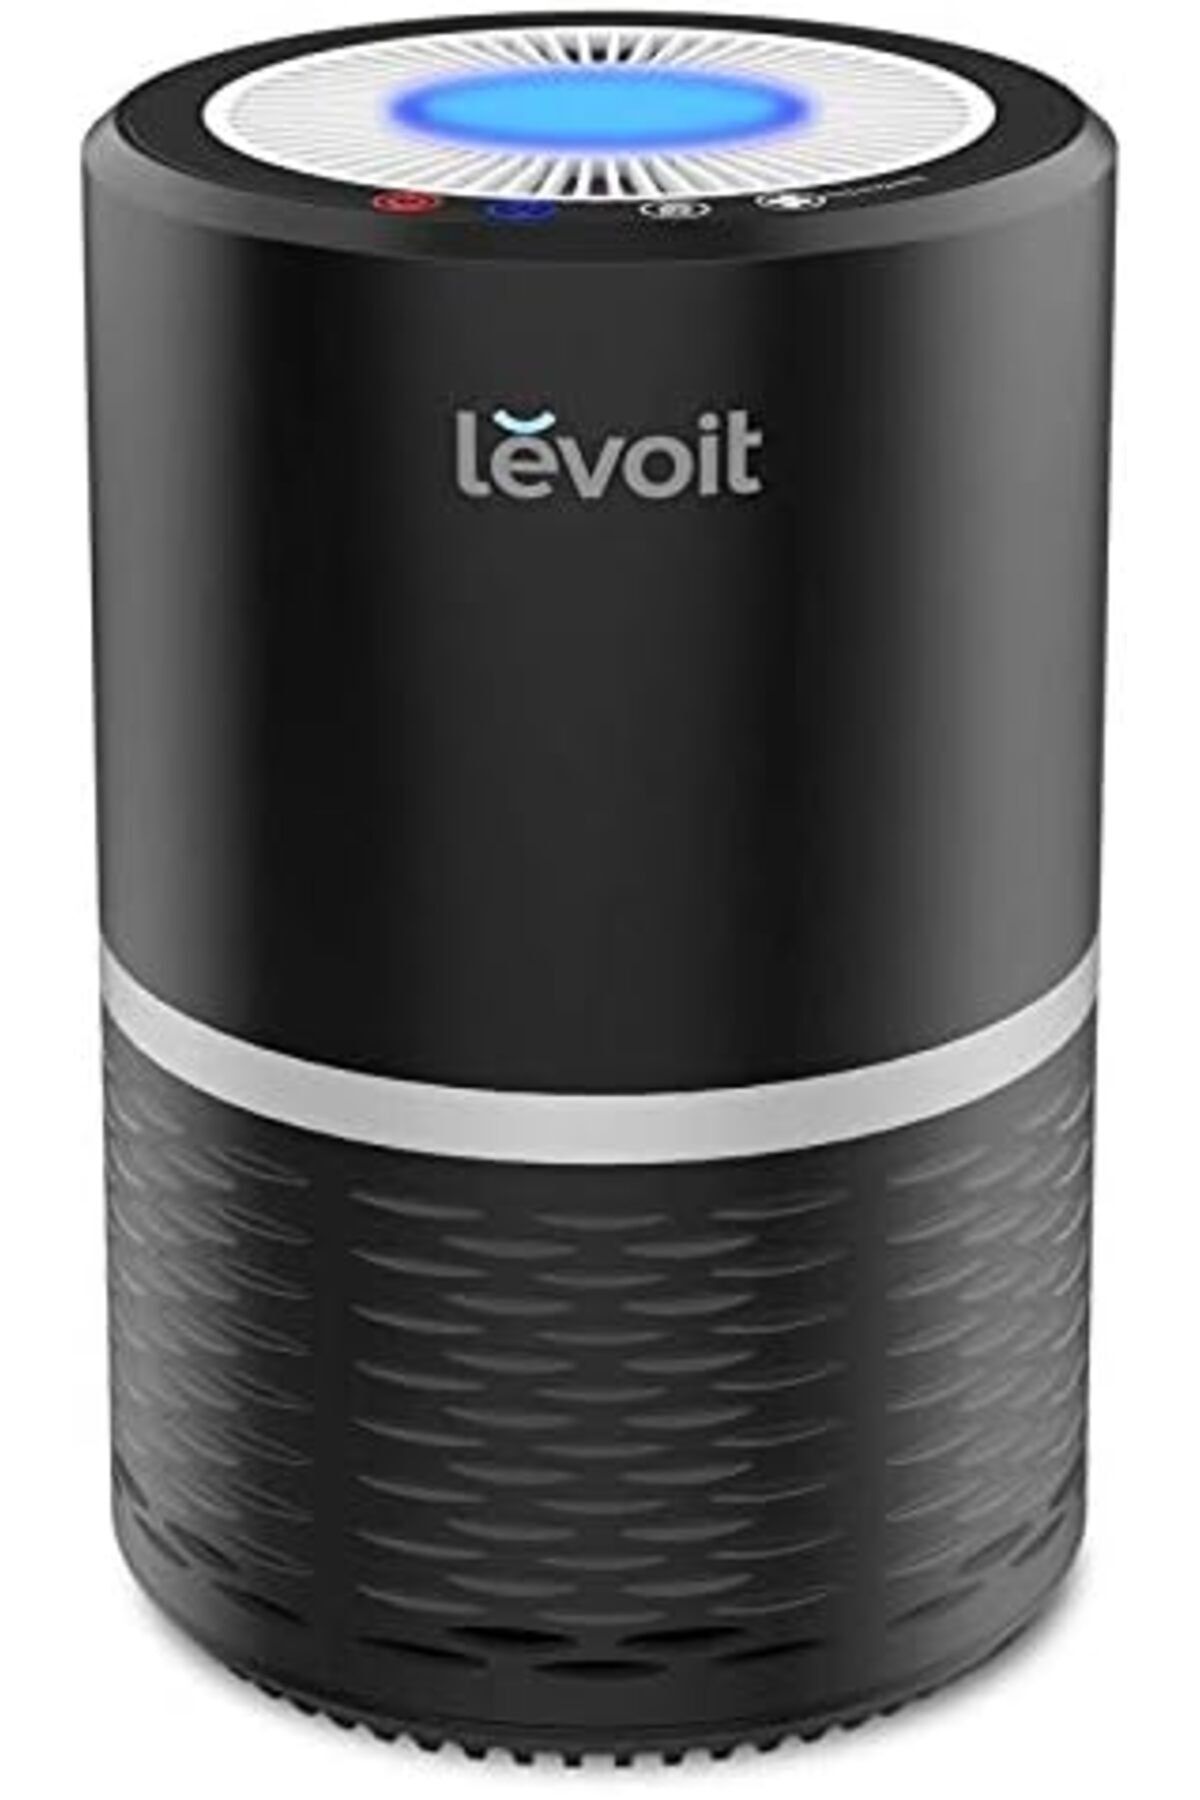 Levoit Home Hepa Filtreli Hava Temizleyici Filtrasyon Etkisi, Ayarlanabilir Gece Lambası